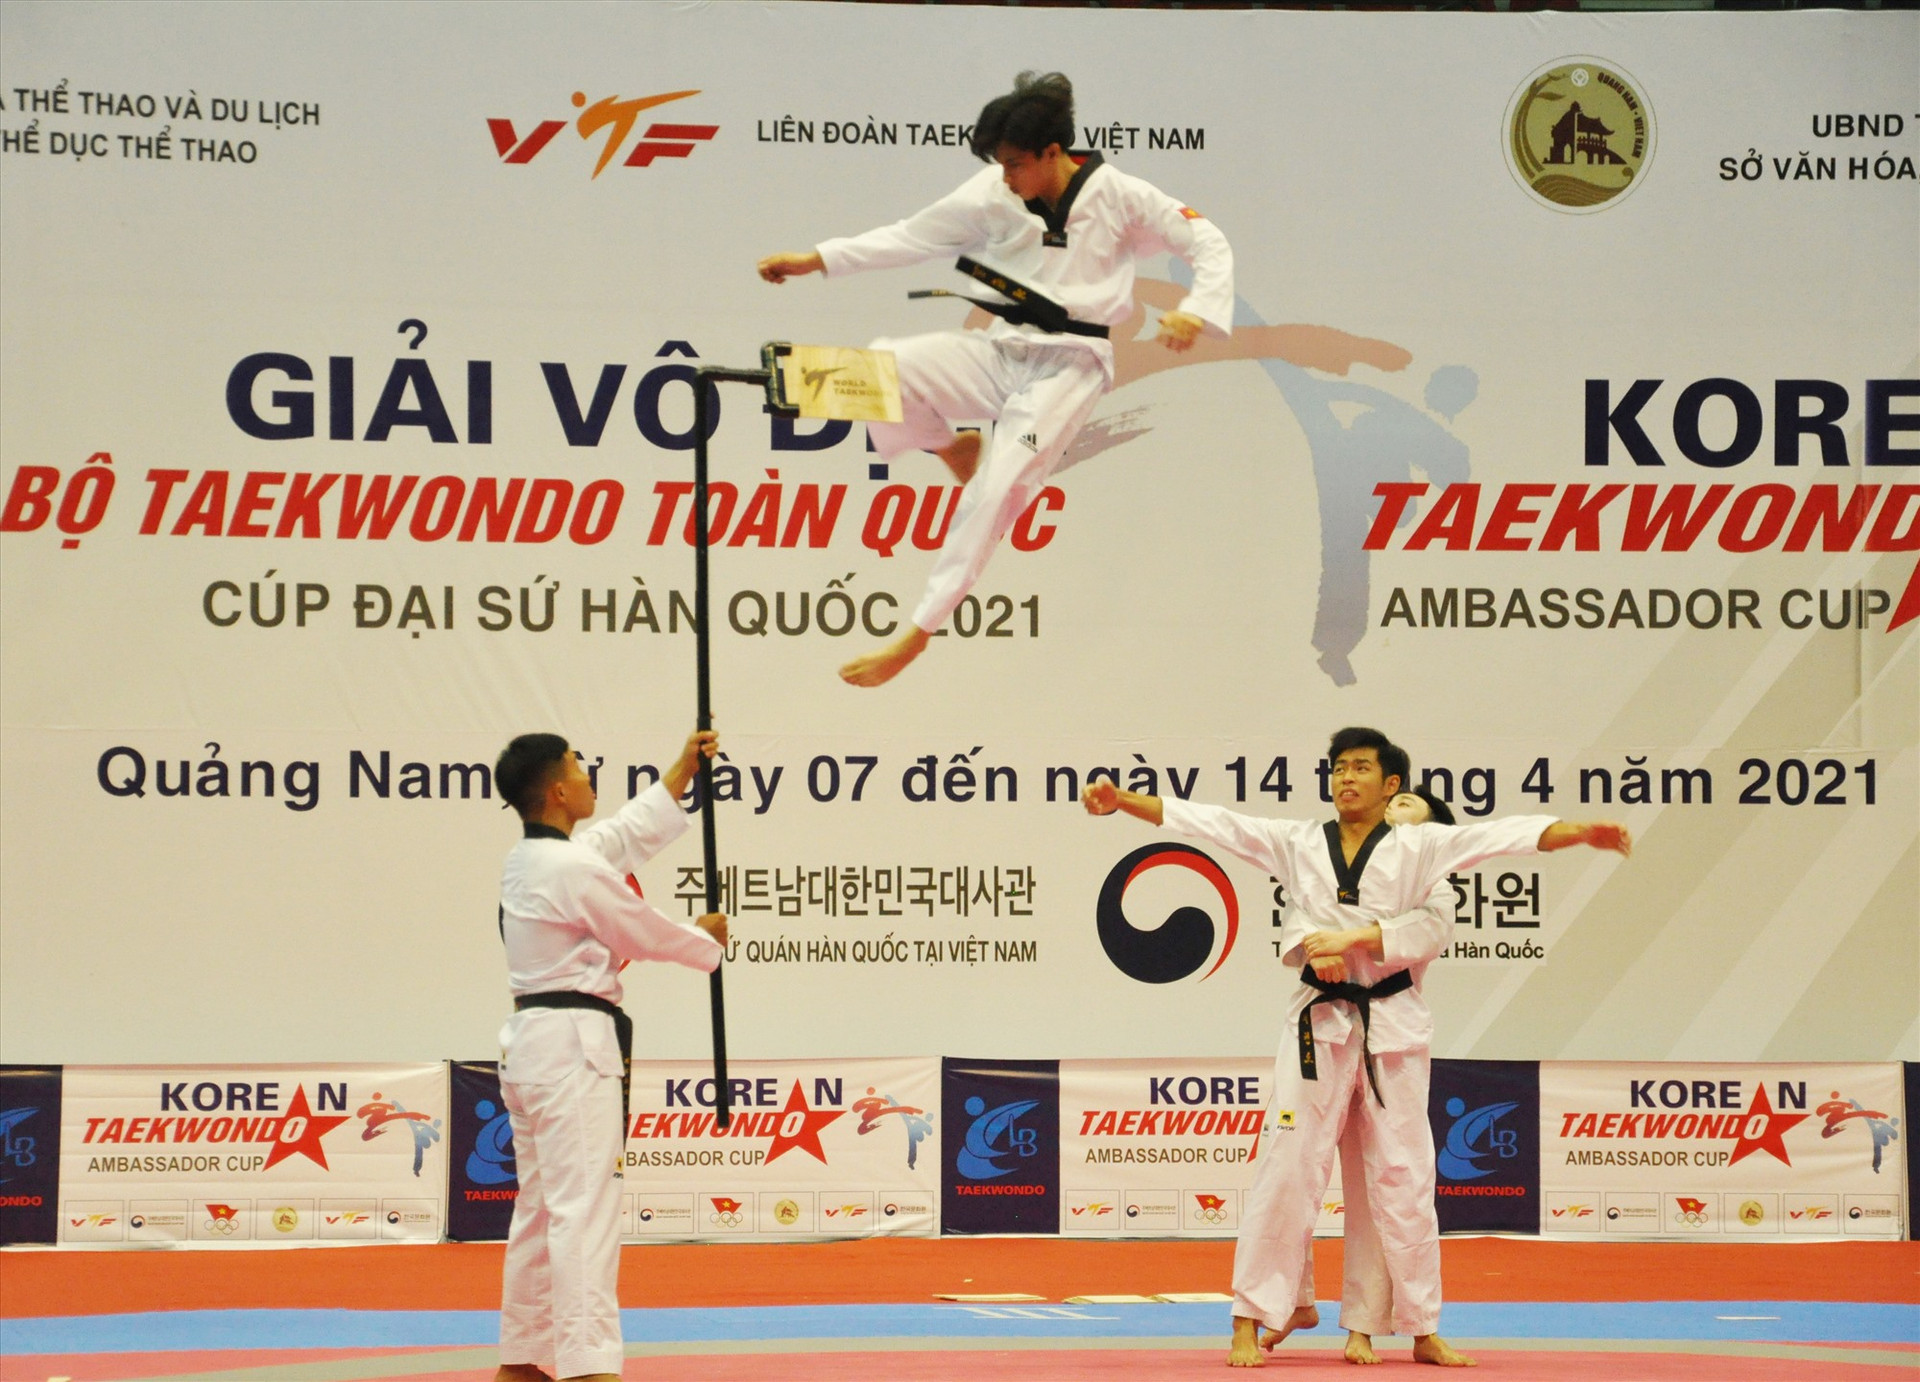 Một pha biểu diễn tại giải vô địch các câu lạc bộ Taekwondo toàn quốc năm 2021 tổ chức tại Quảng Nam. Ảnh: T.VY